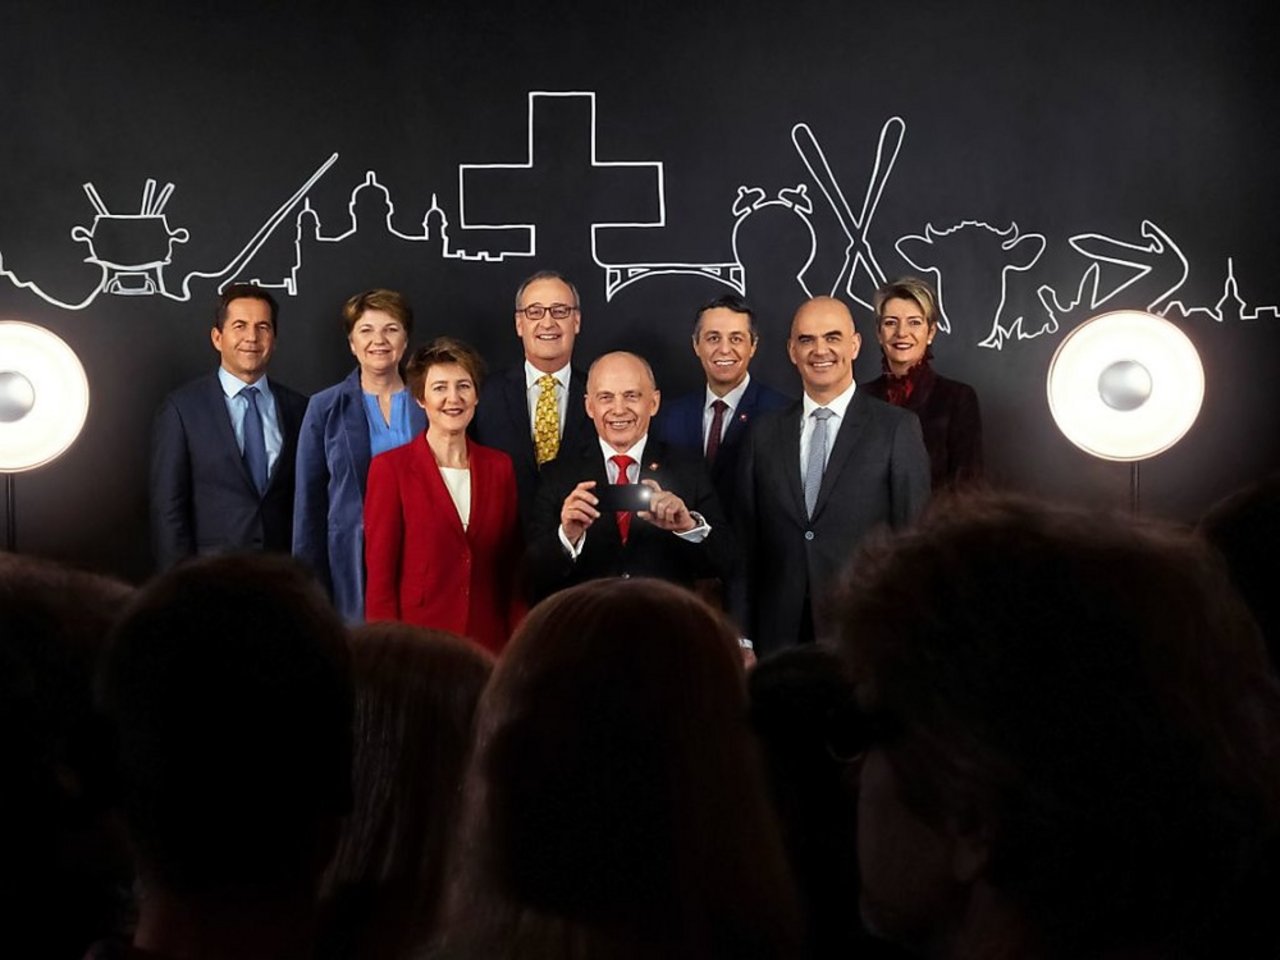 Das Bundesratsfoto 2019 unter dem Motto Perspektivenwechsel: Es. zeigt Ueli Maurer, wie er Bürger fotografiert. (Bild Bundeskanzlei)